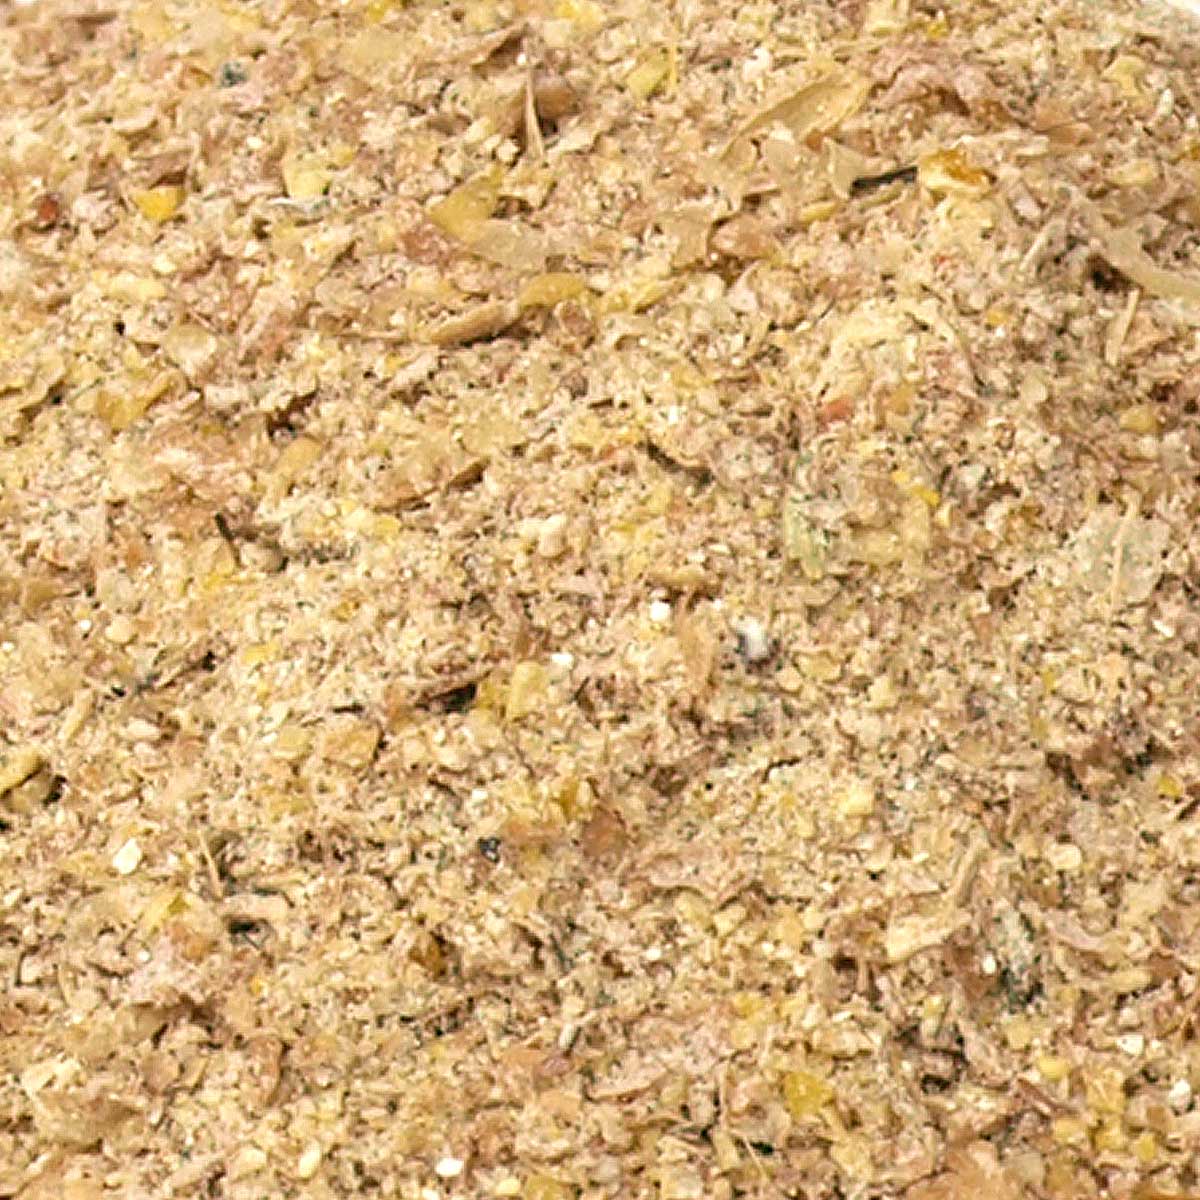 Leimüller Dvärggrisfoder Dvärggrisfoder för smågrisar 25 kg